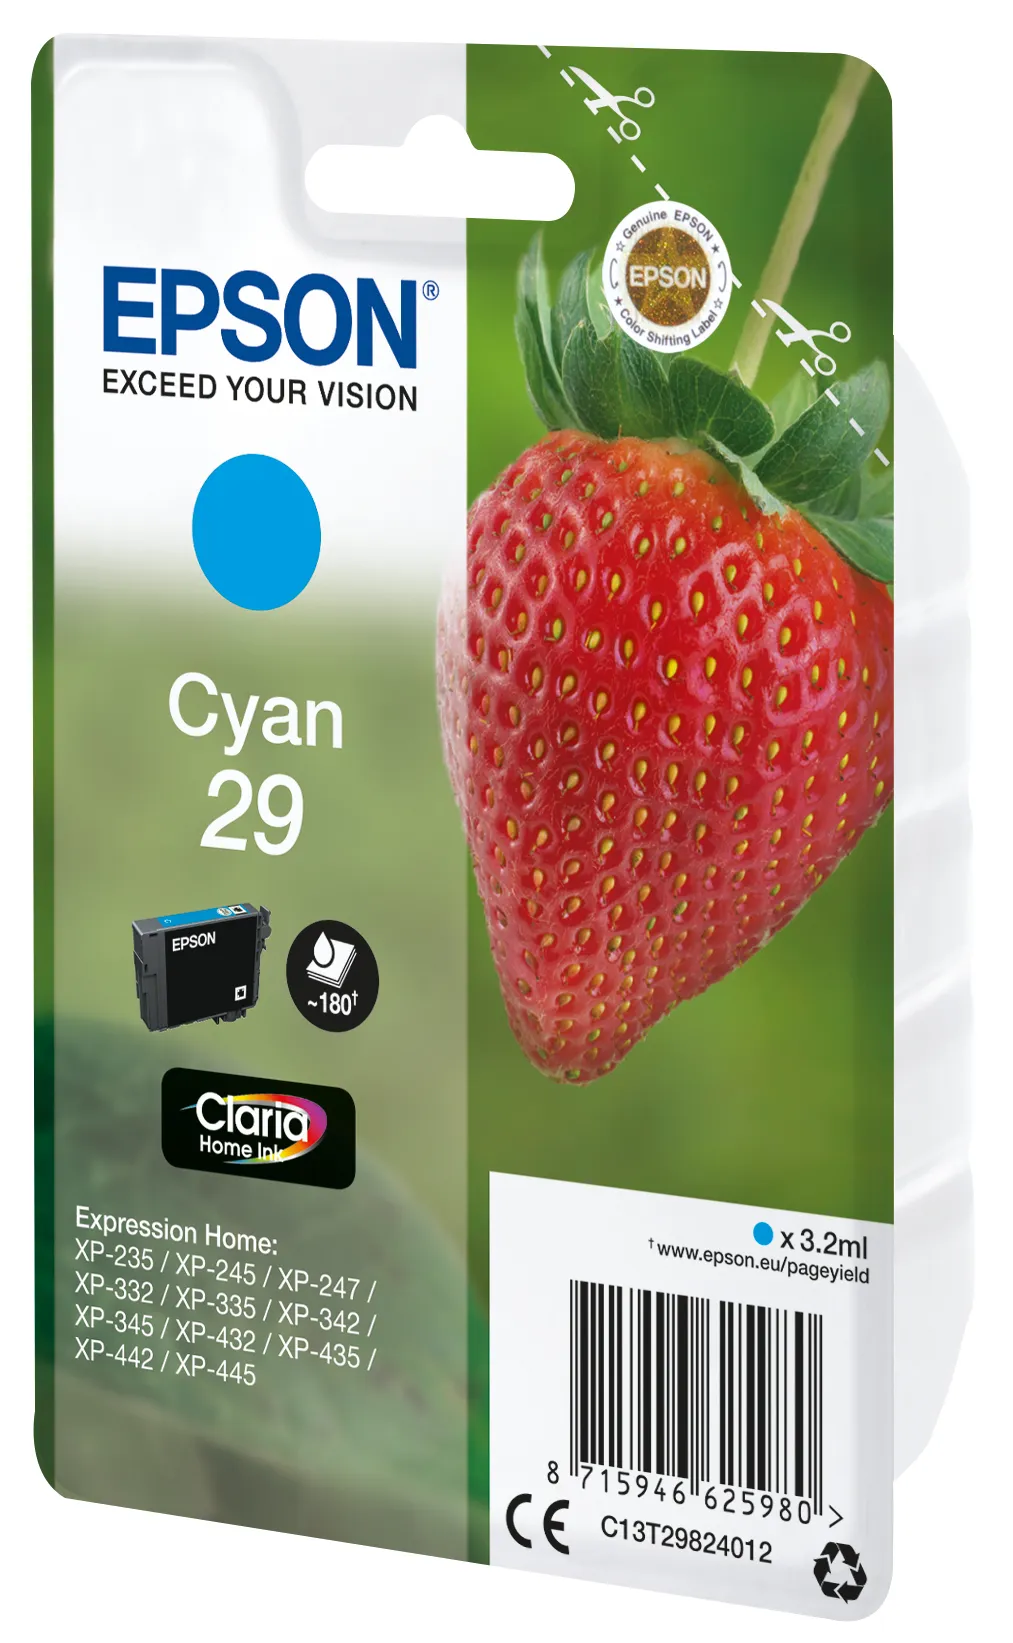 Vente EPSON Cartouche Fraise Encre Claria Home Cyan Epson au meilleur prix - visuel 4